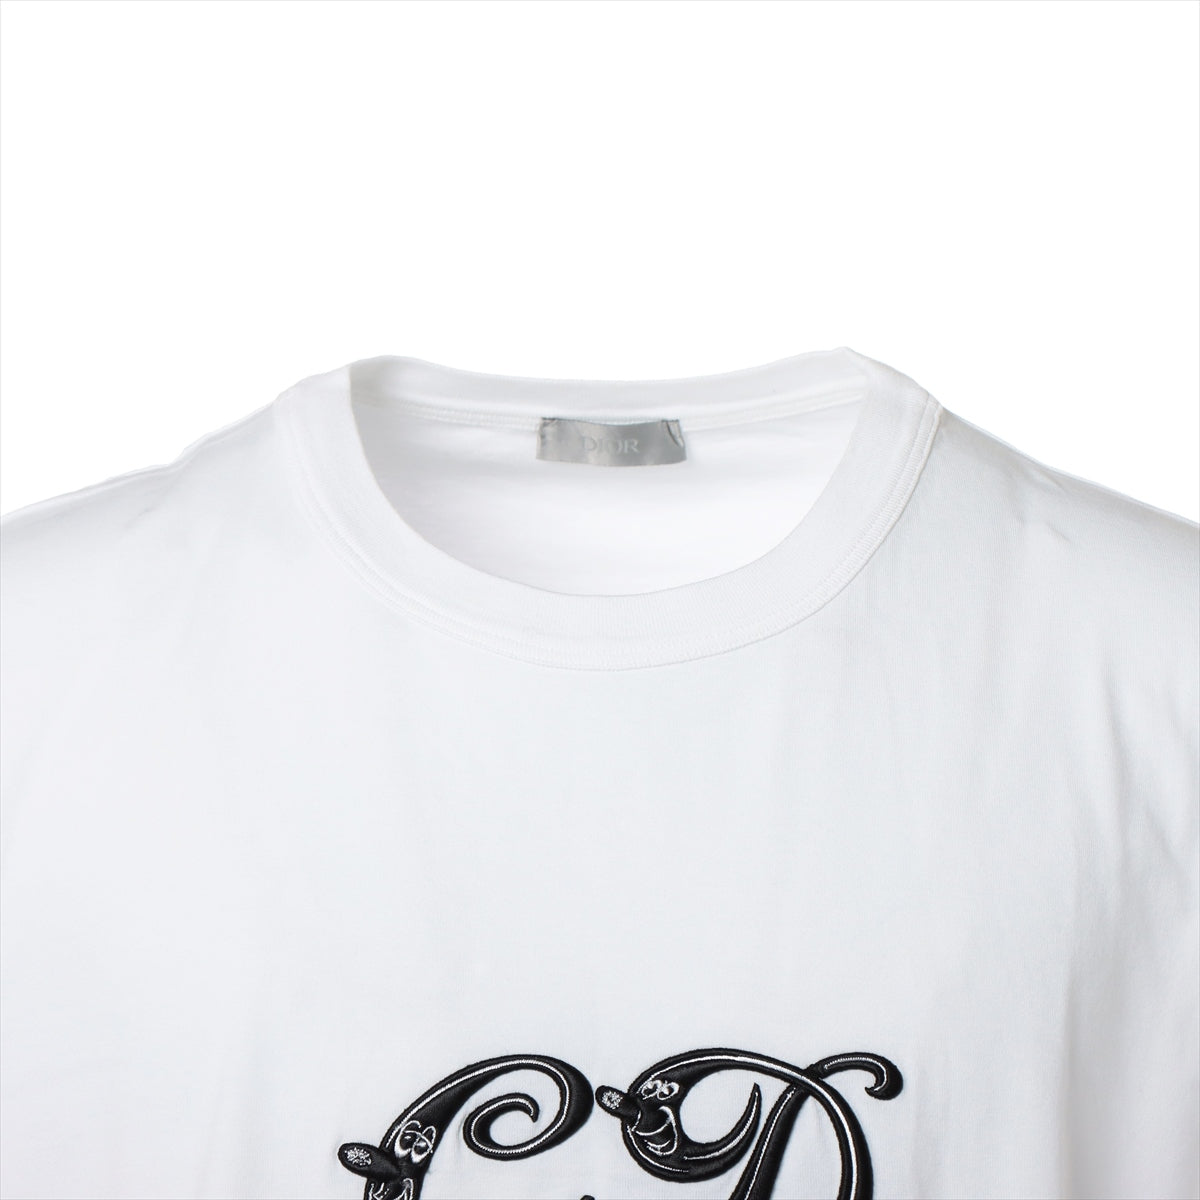 ディオール×ケニーシャーフ コットン Tシャツ XL メンズ ホワイト